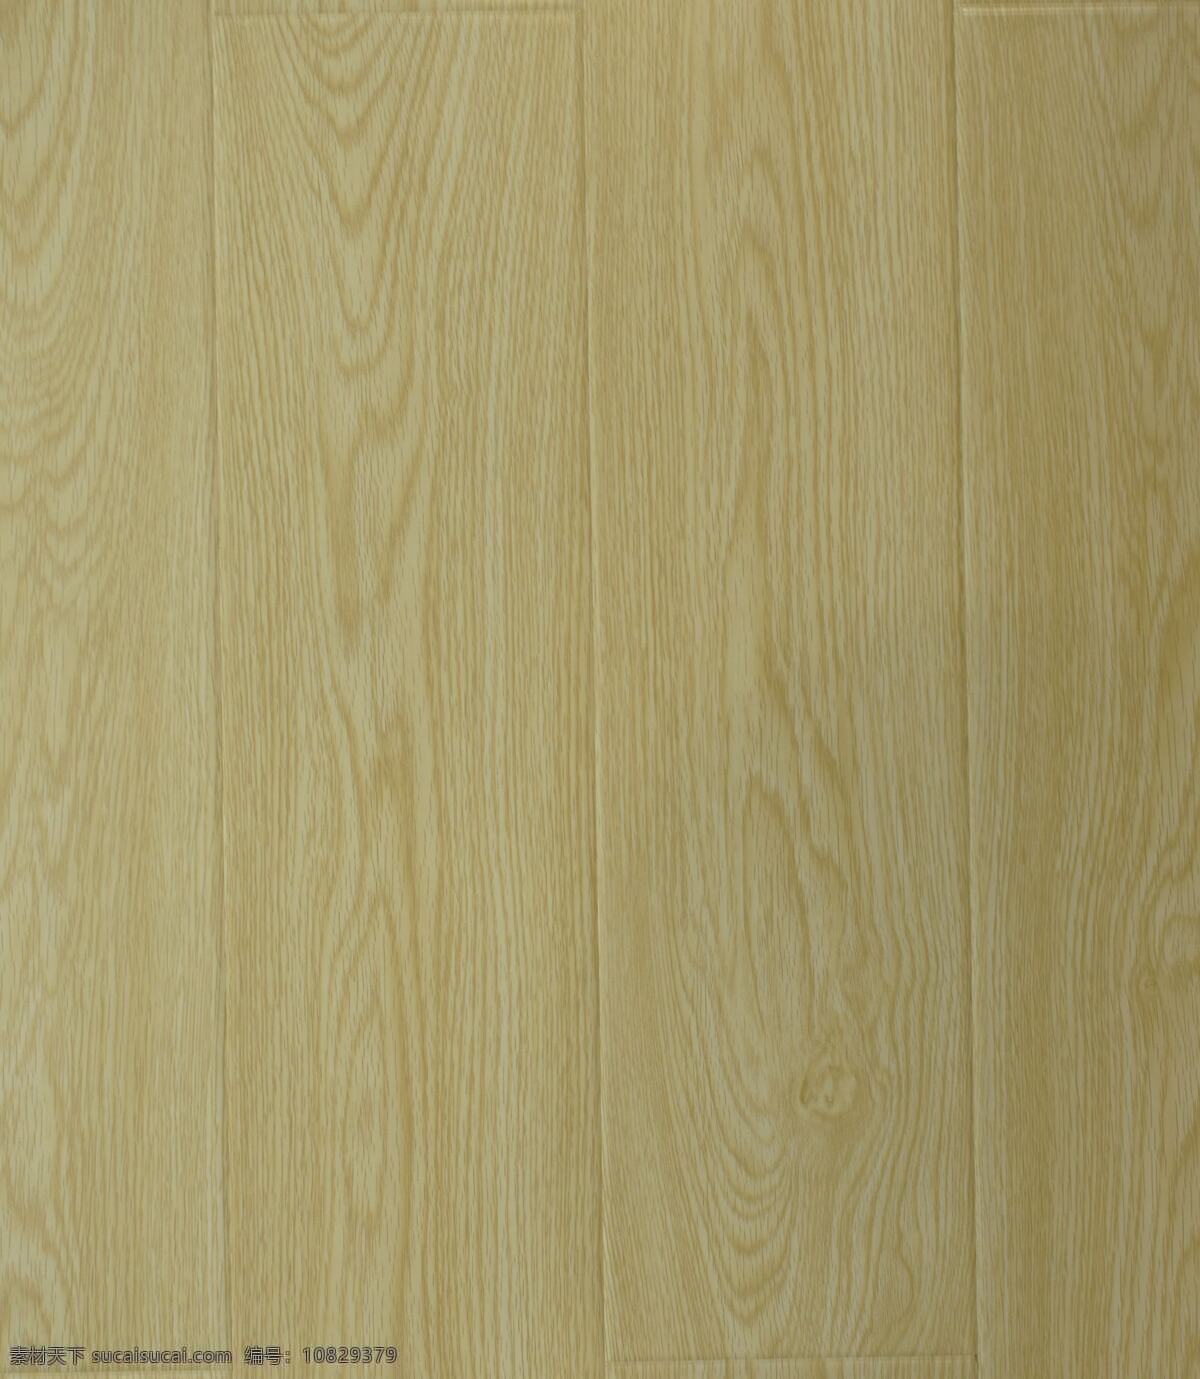 临江仙 橡木 地板 实木地板 地板贴图 地板材质 家装素材 装修素材 装修装饰 木纹贴图 木纹装饰 木纹图案 生活百科 生活素材